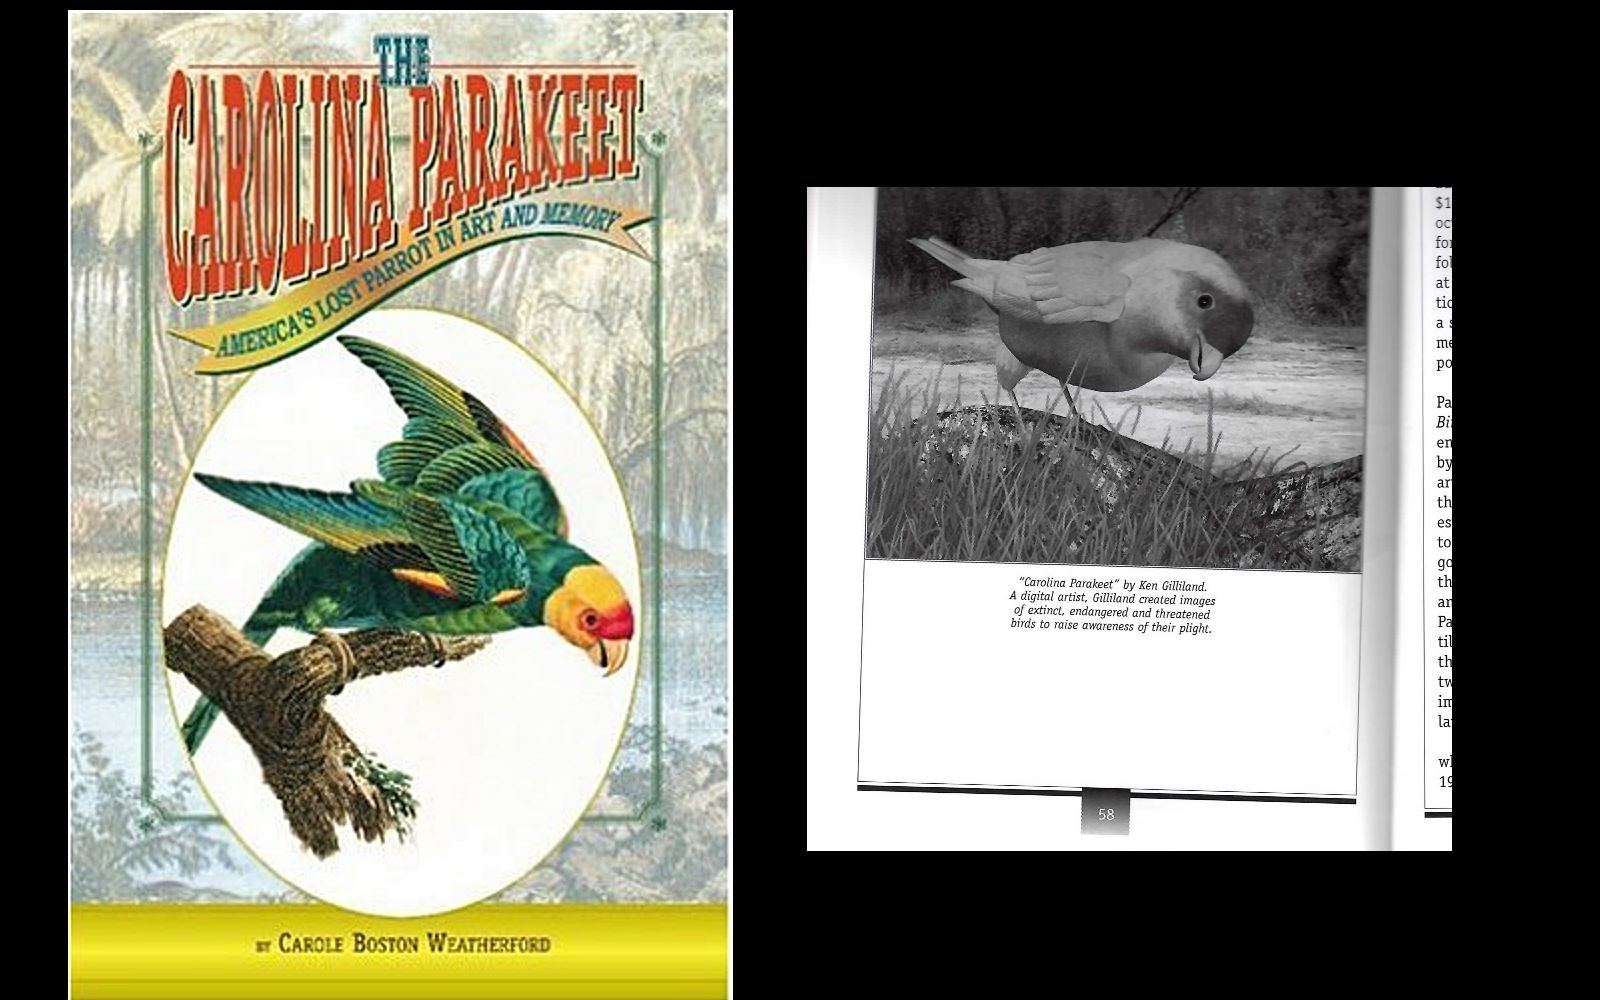 Songbird ReMix Carolina Parakeet was featured in 'The Carolina Parakeet' book